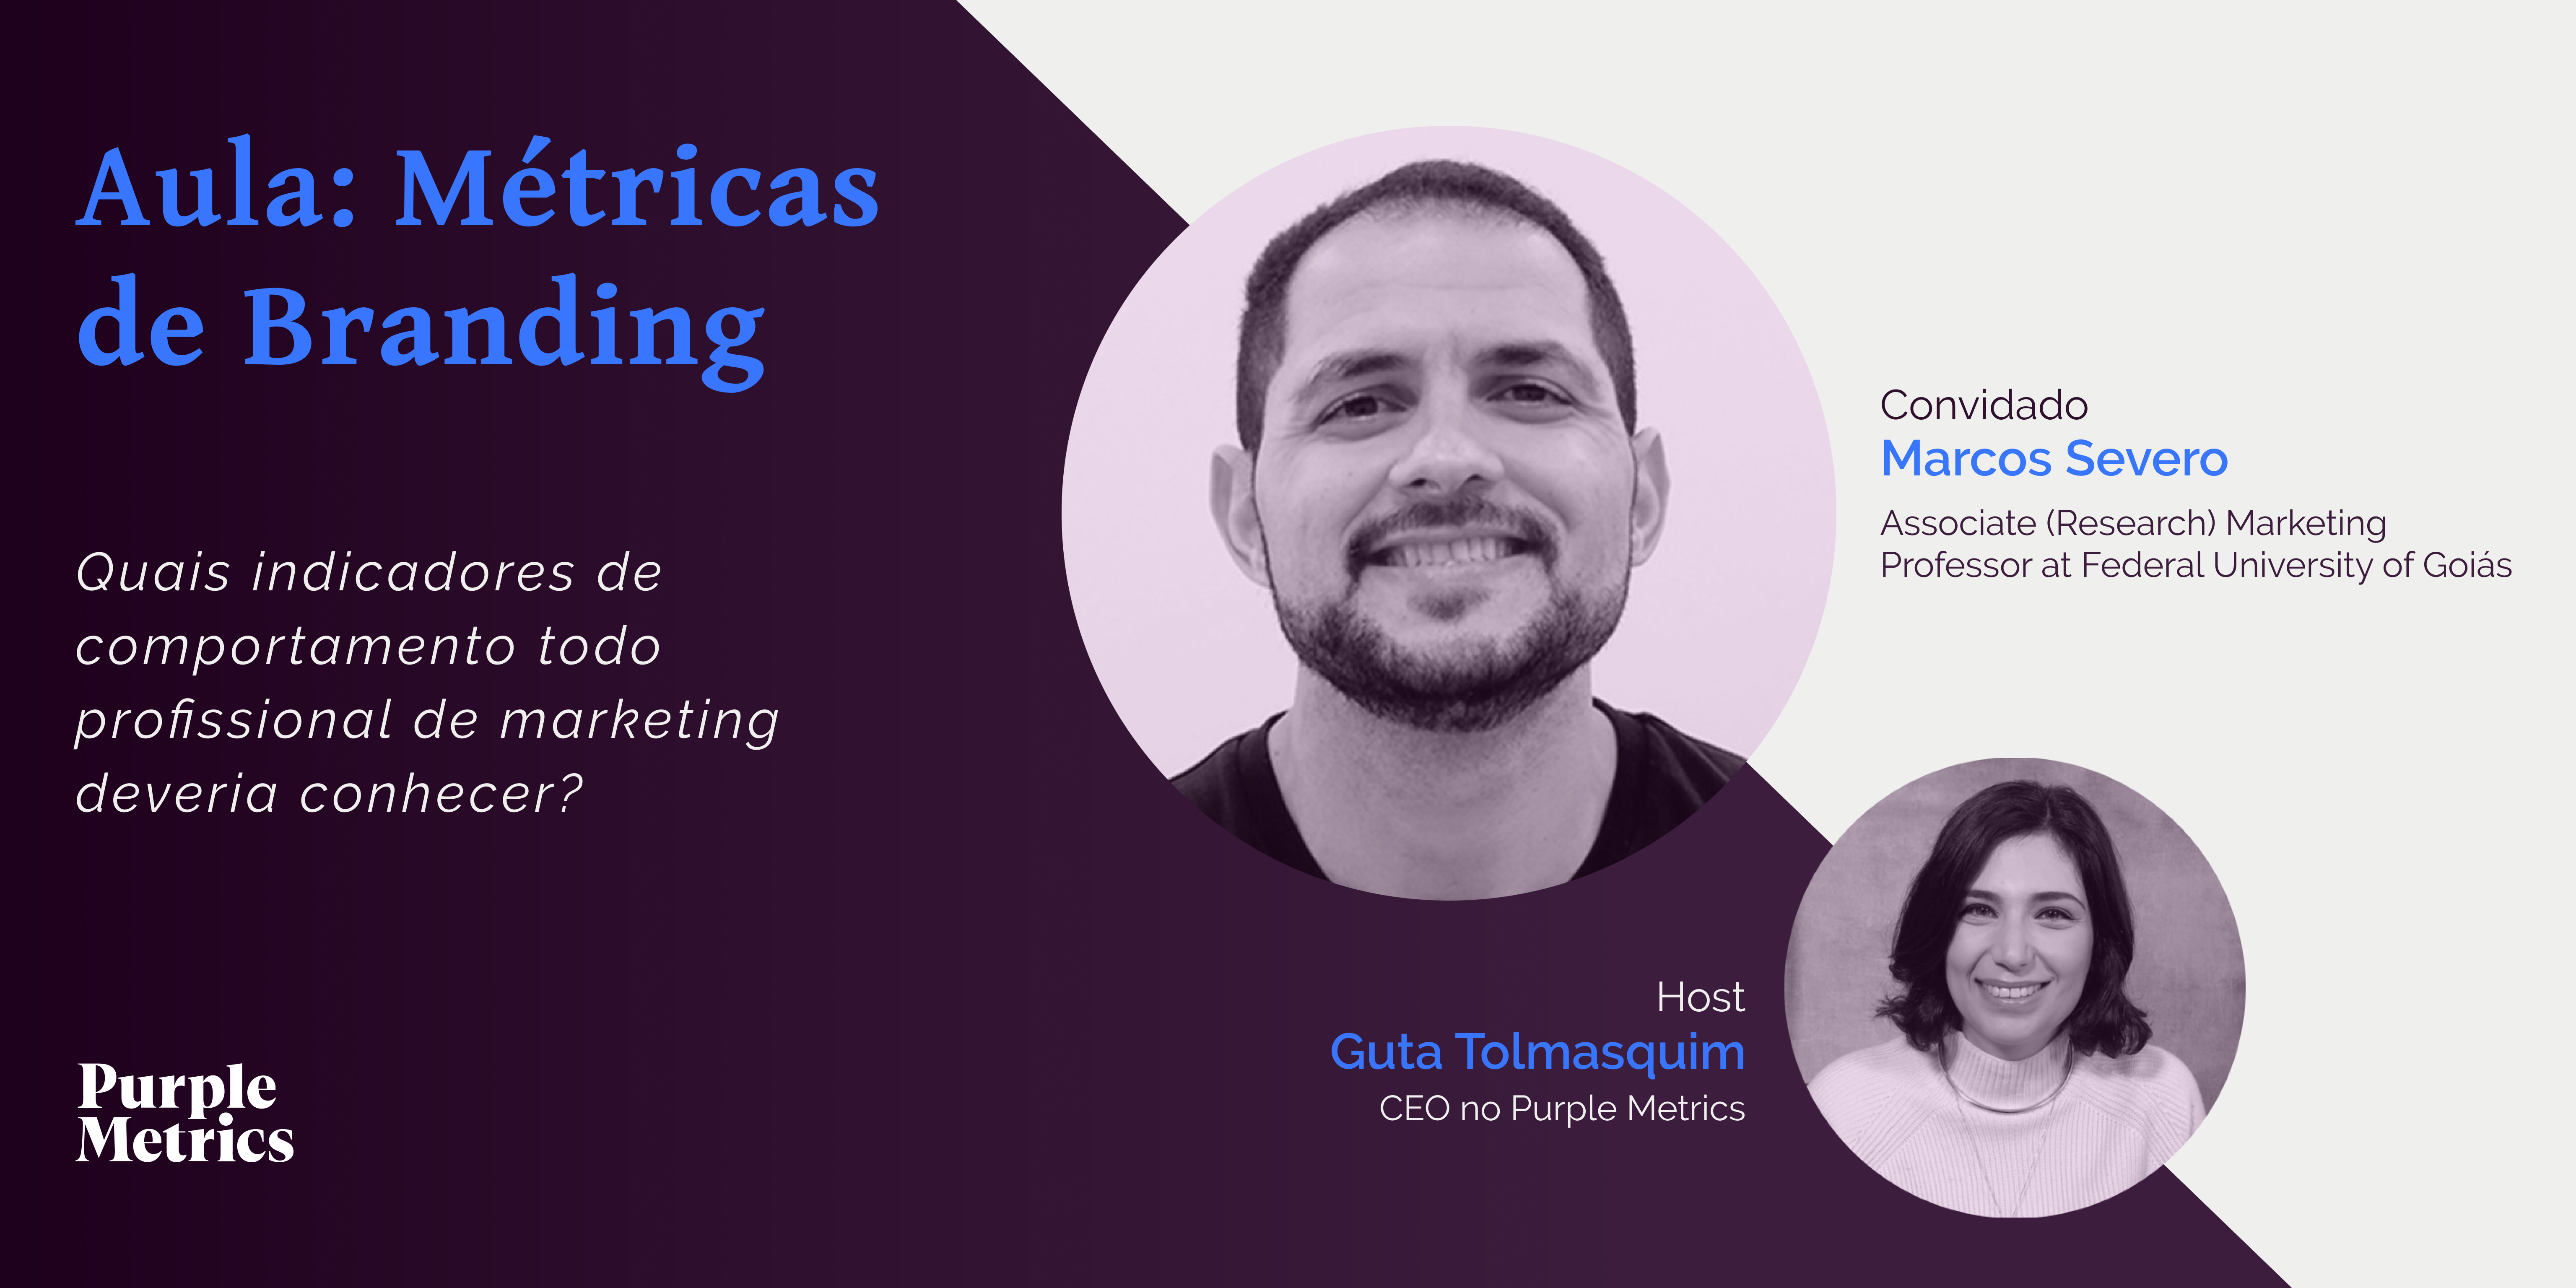 Purple Metrics - aula métricas de branding com Marcos Severo e Guta Tolmasquim